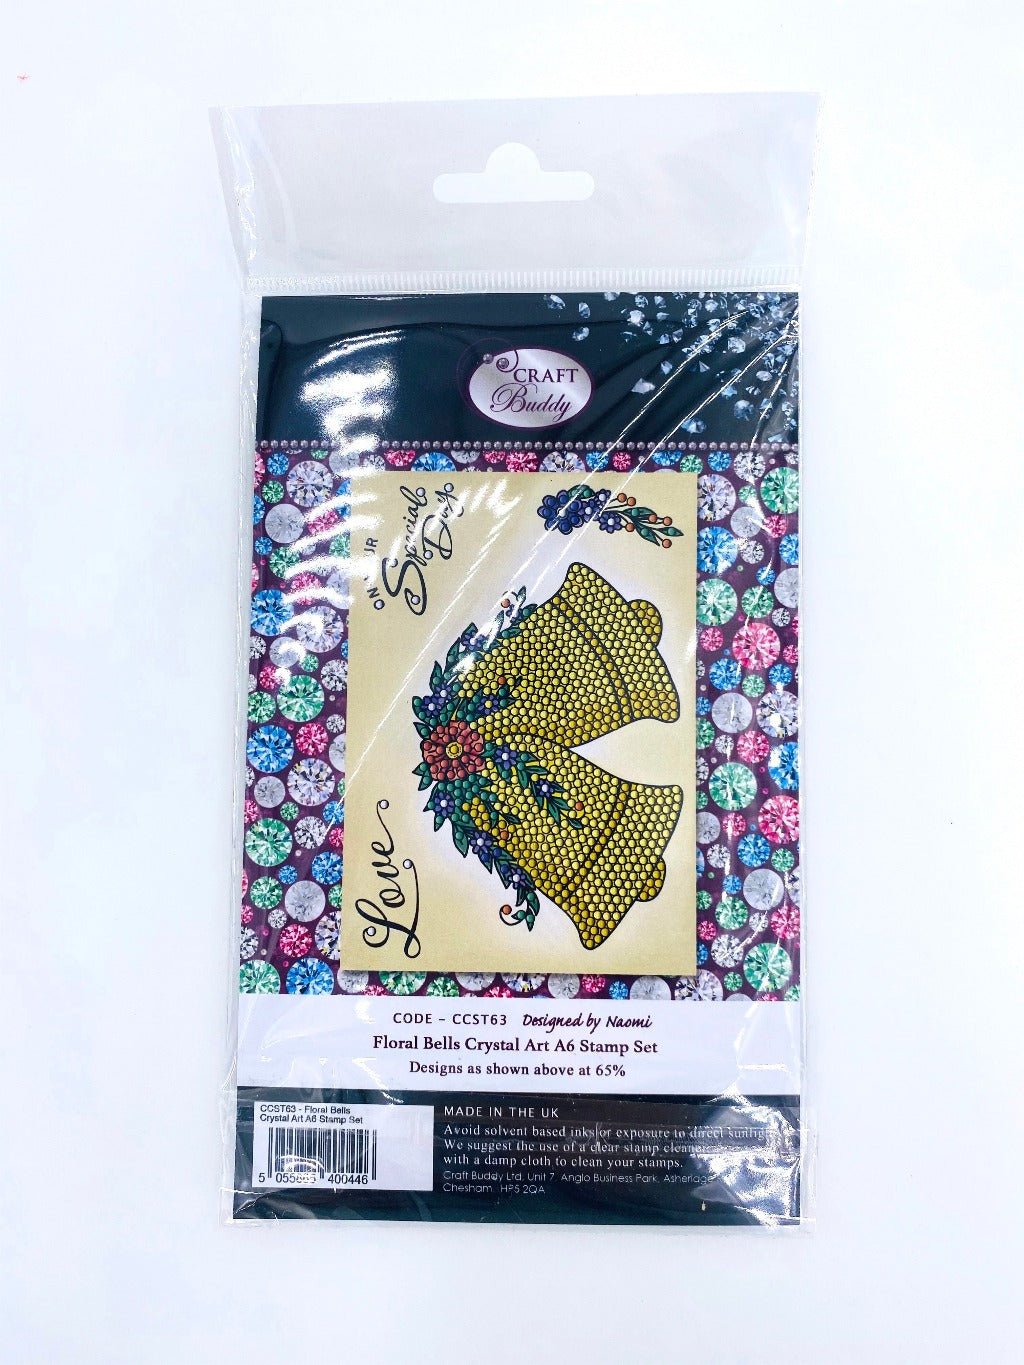 Crystal Art A6 Stamp Set - Floral Bells